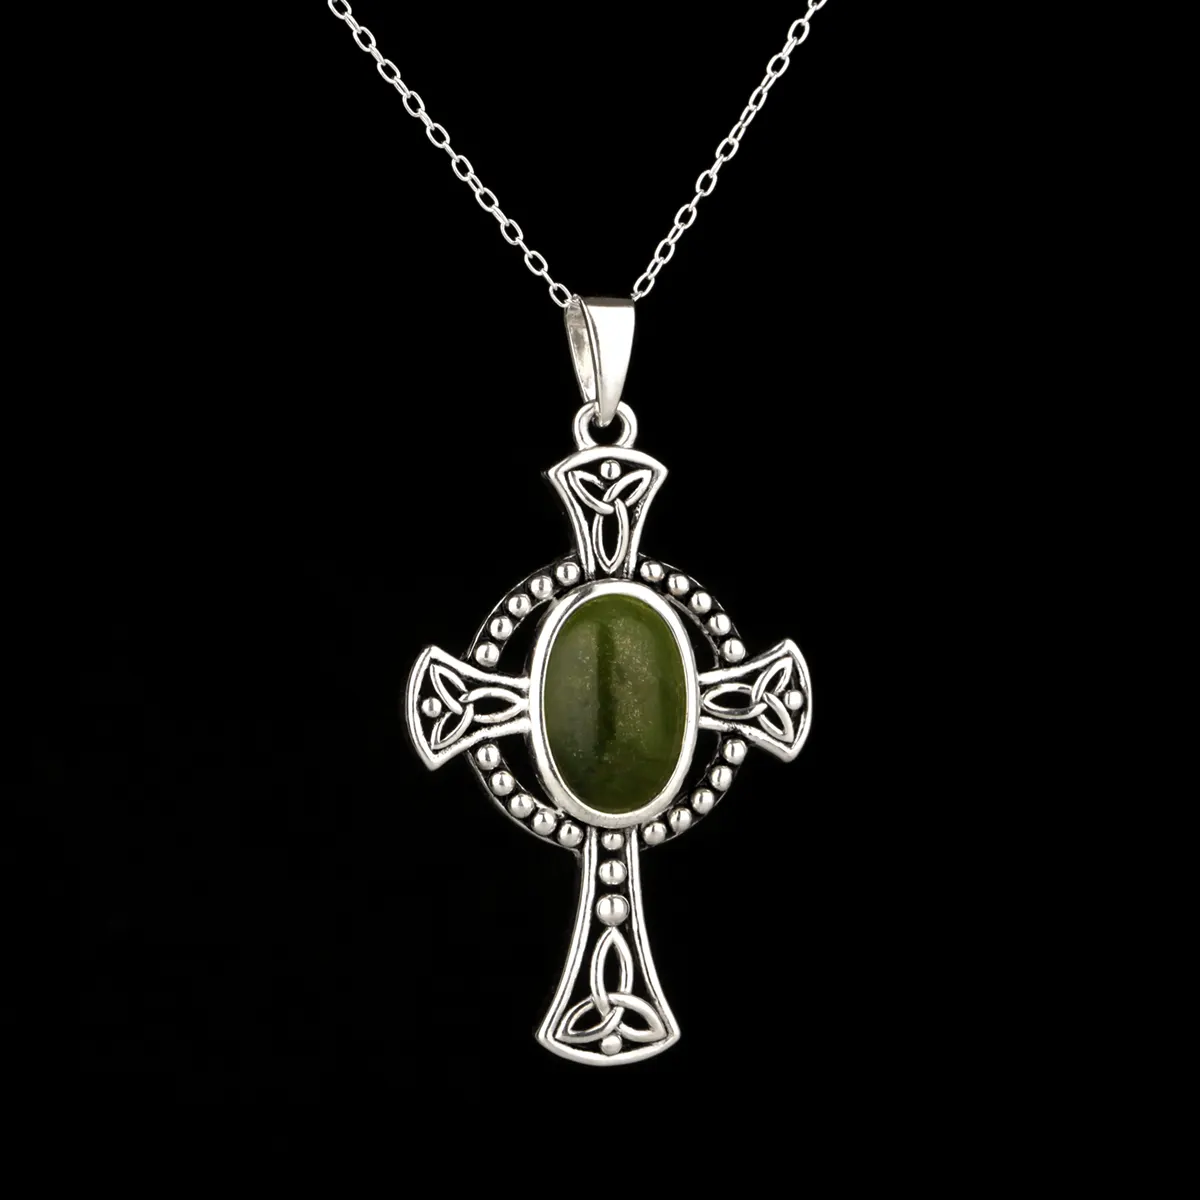 Connemara Trinity Cross - Keltisches Kreuz aus Irland - Silber & grüner Marmor